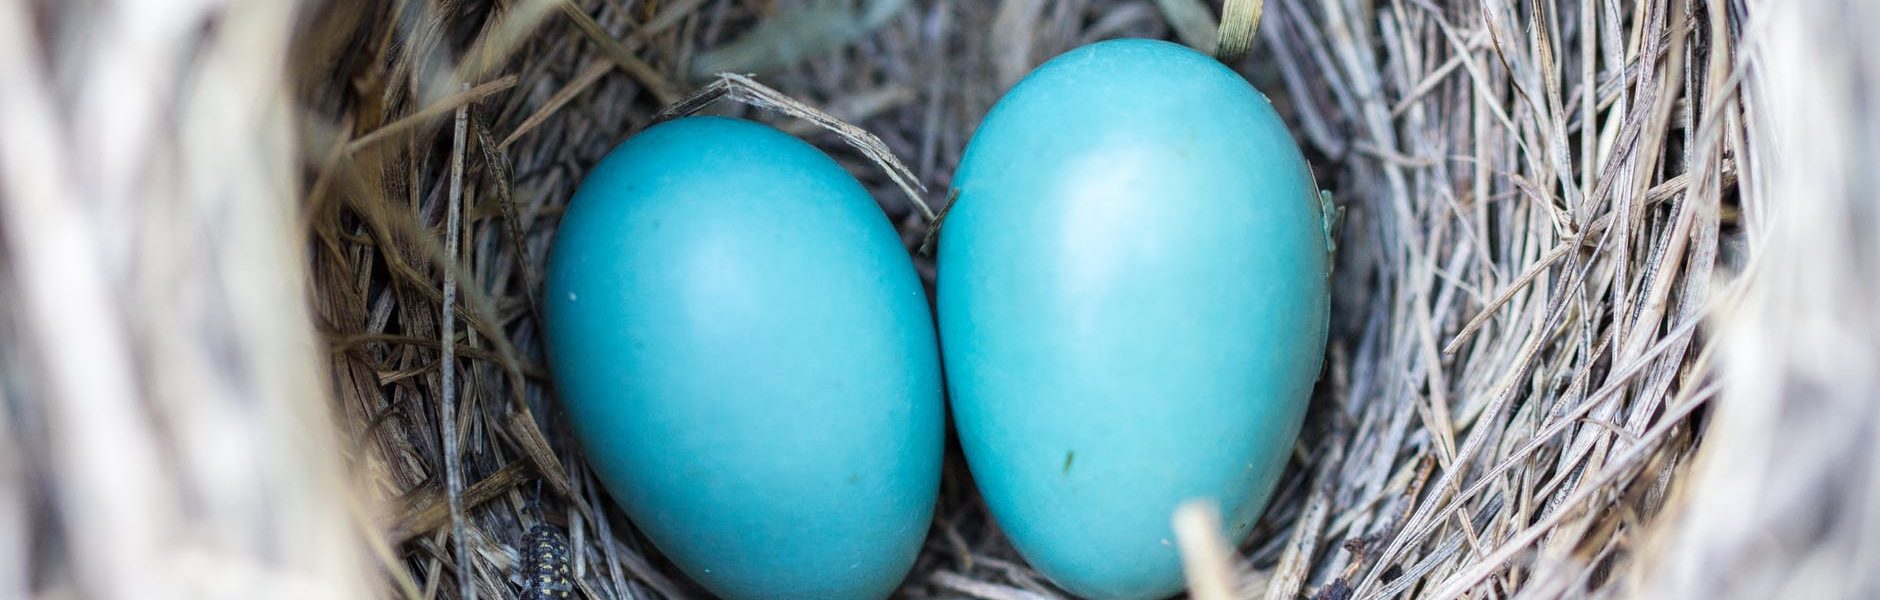 jakie ptaki składają niebieskie jaja